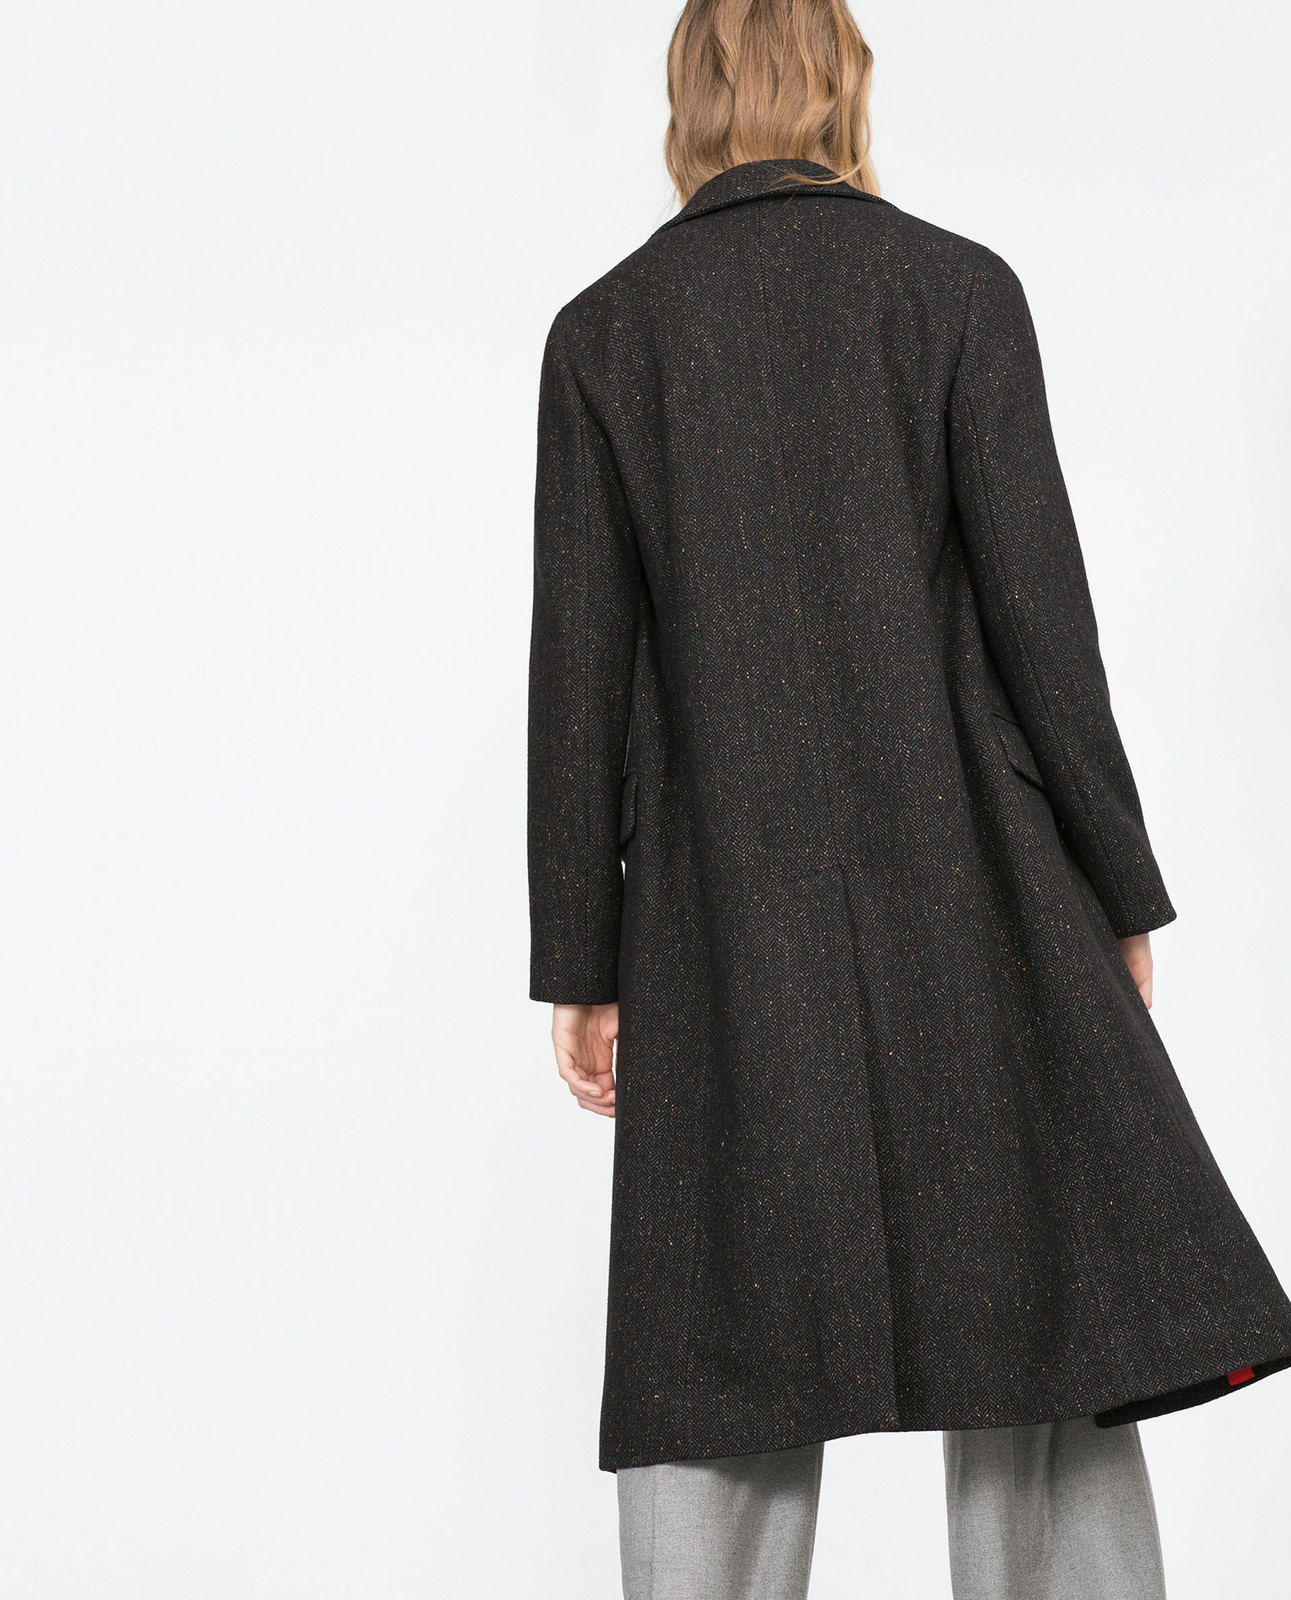 Zara egyenes szabású női kabát 2015.10.15 #88519 fotója